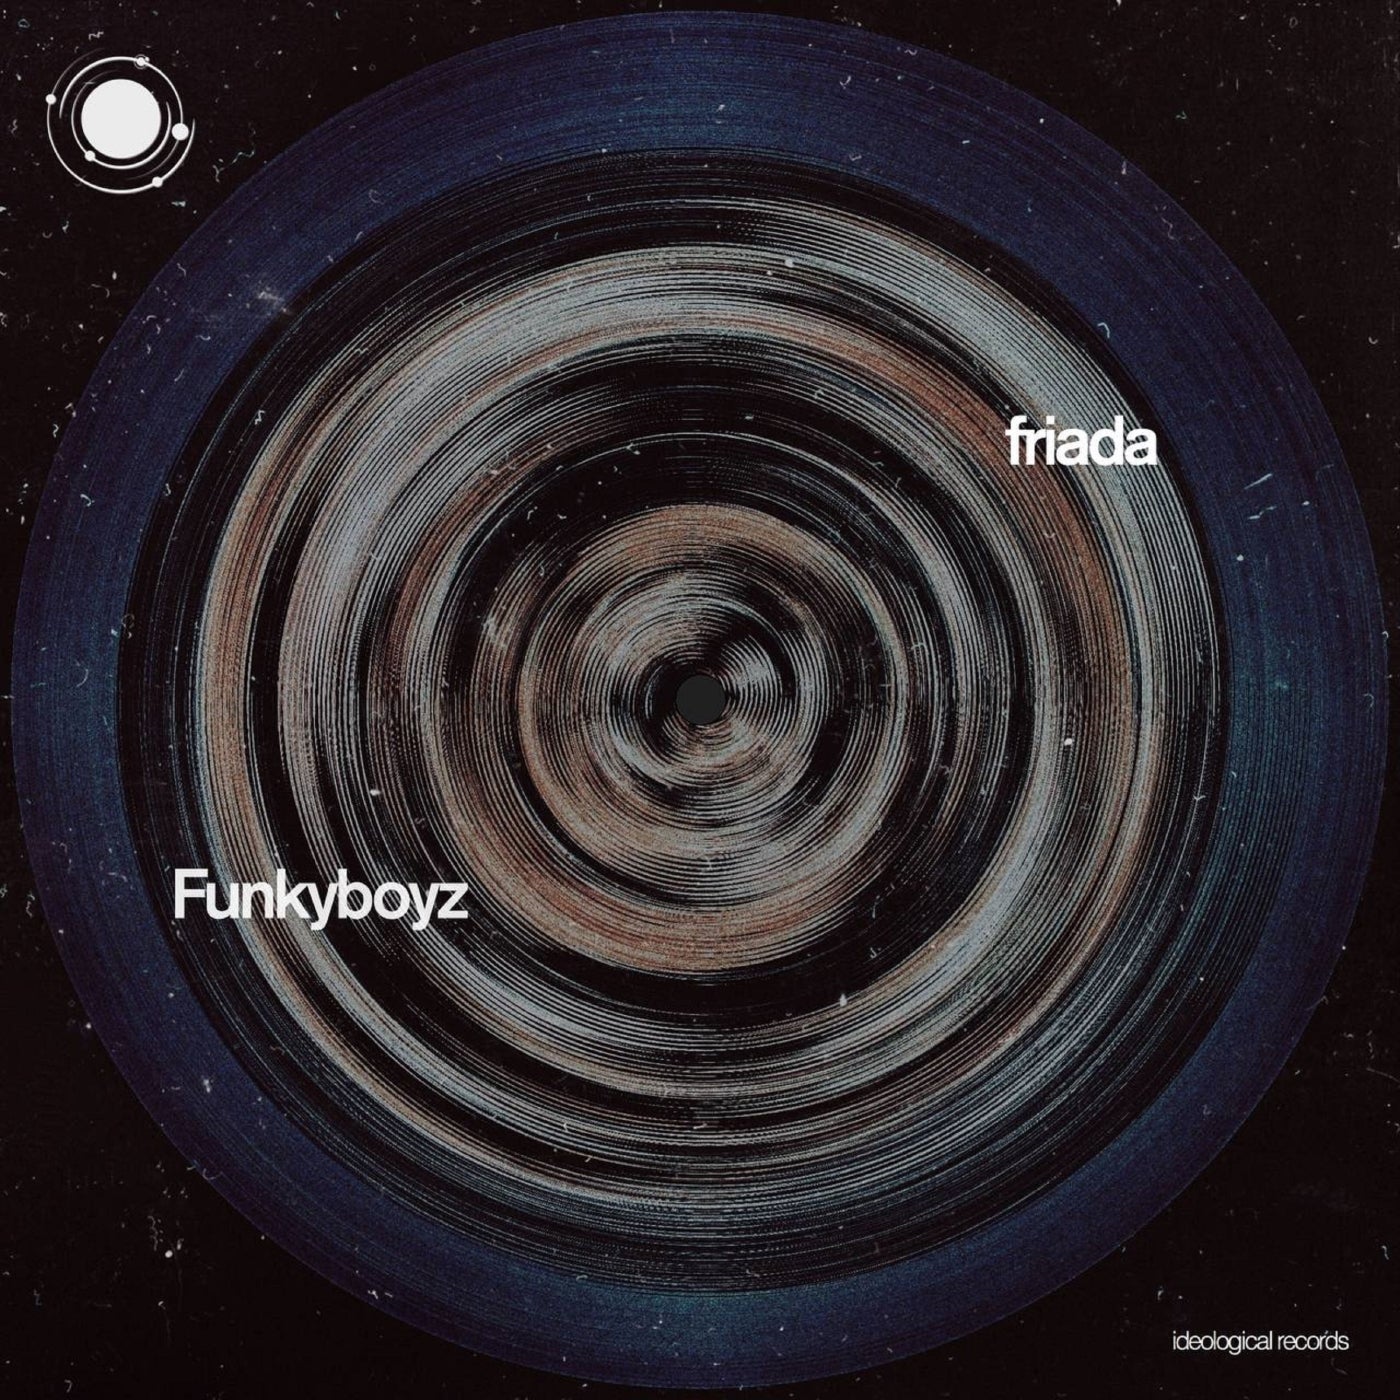 Funkyboyz – Friada [IDE020]